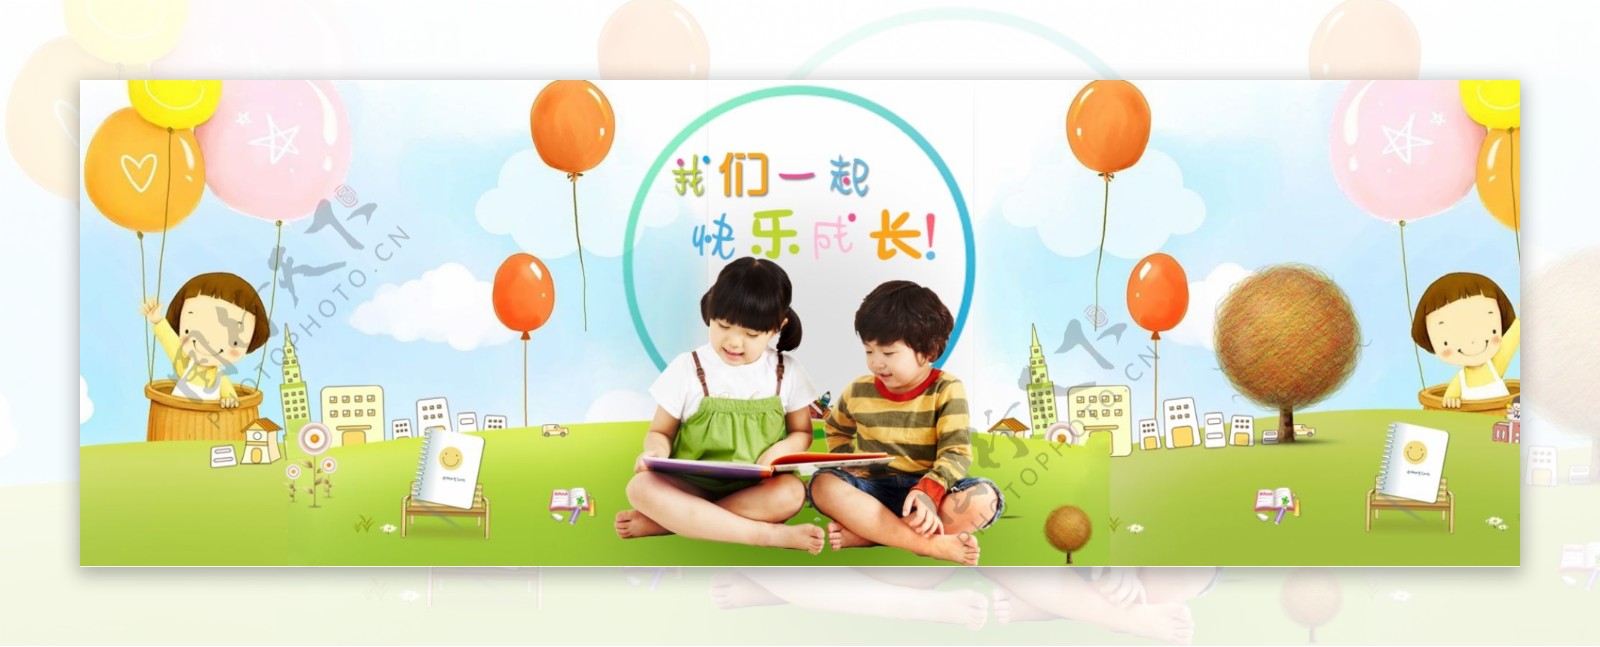 61儿童节电商图书促销活动banner